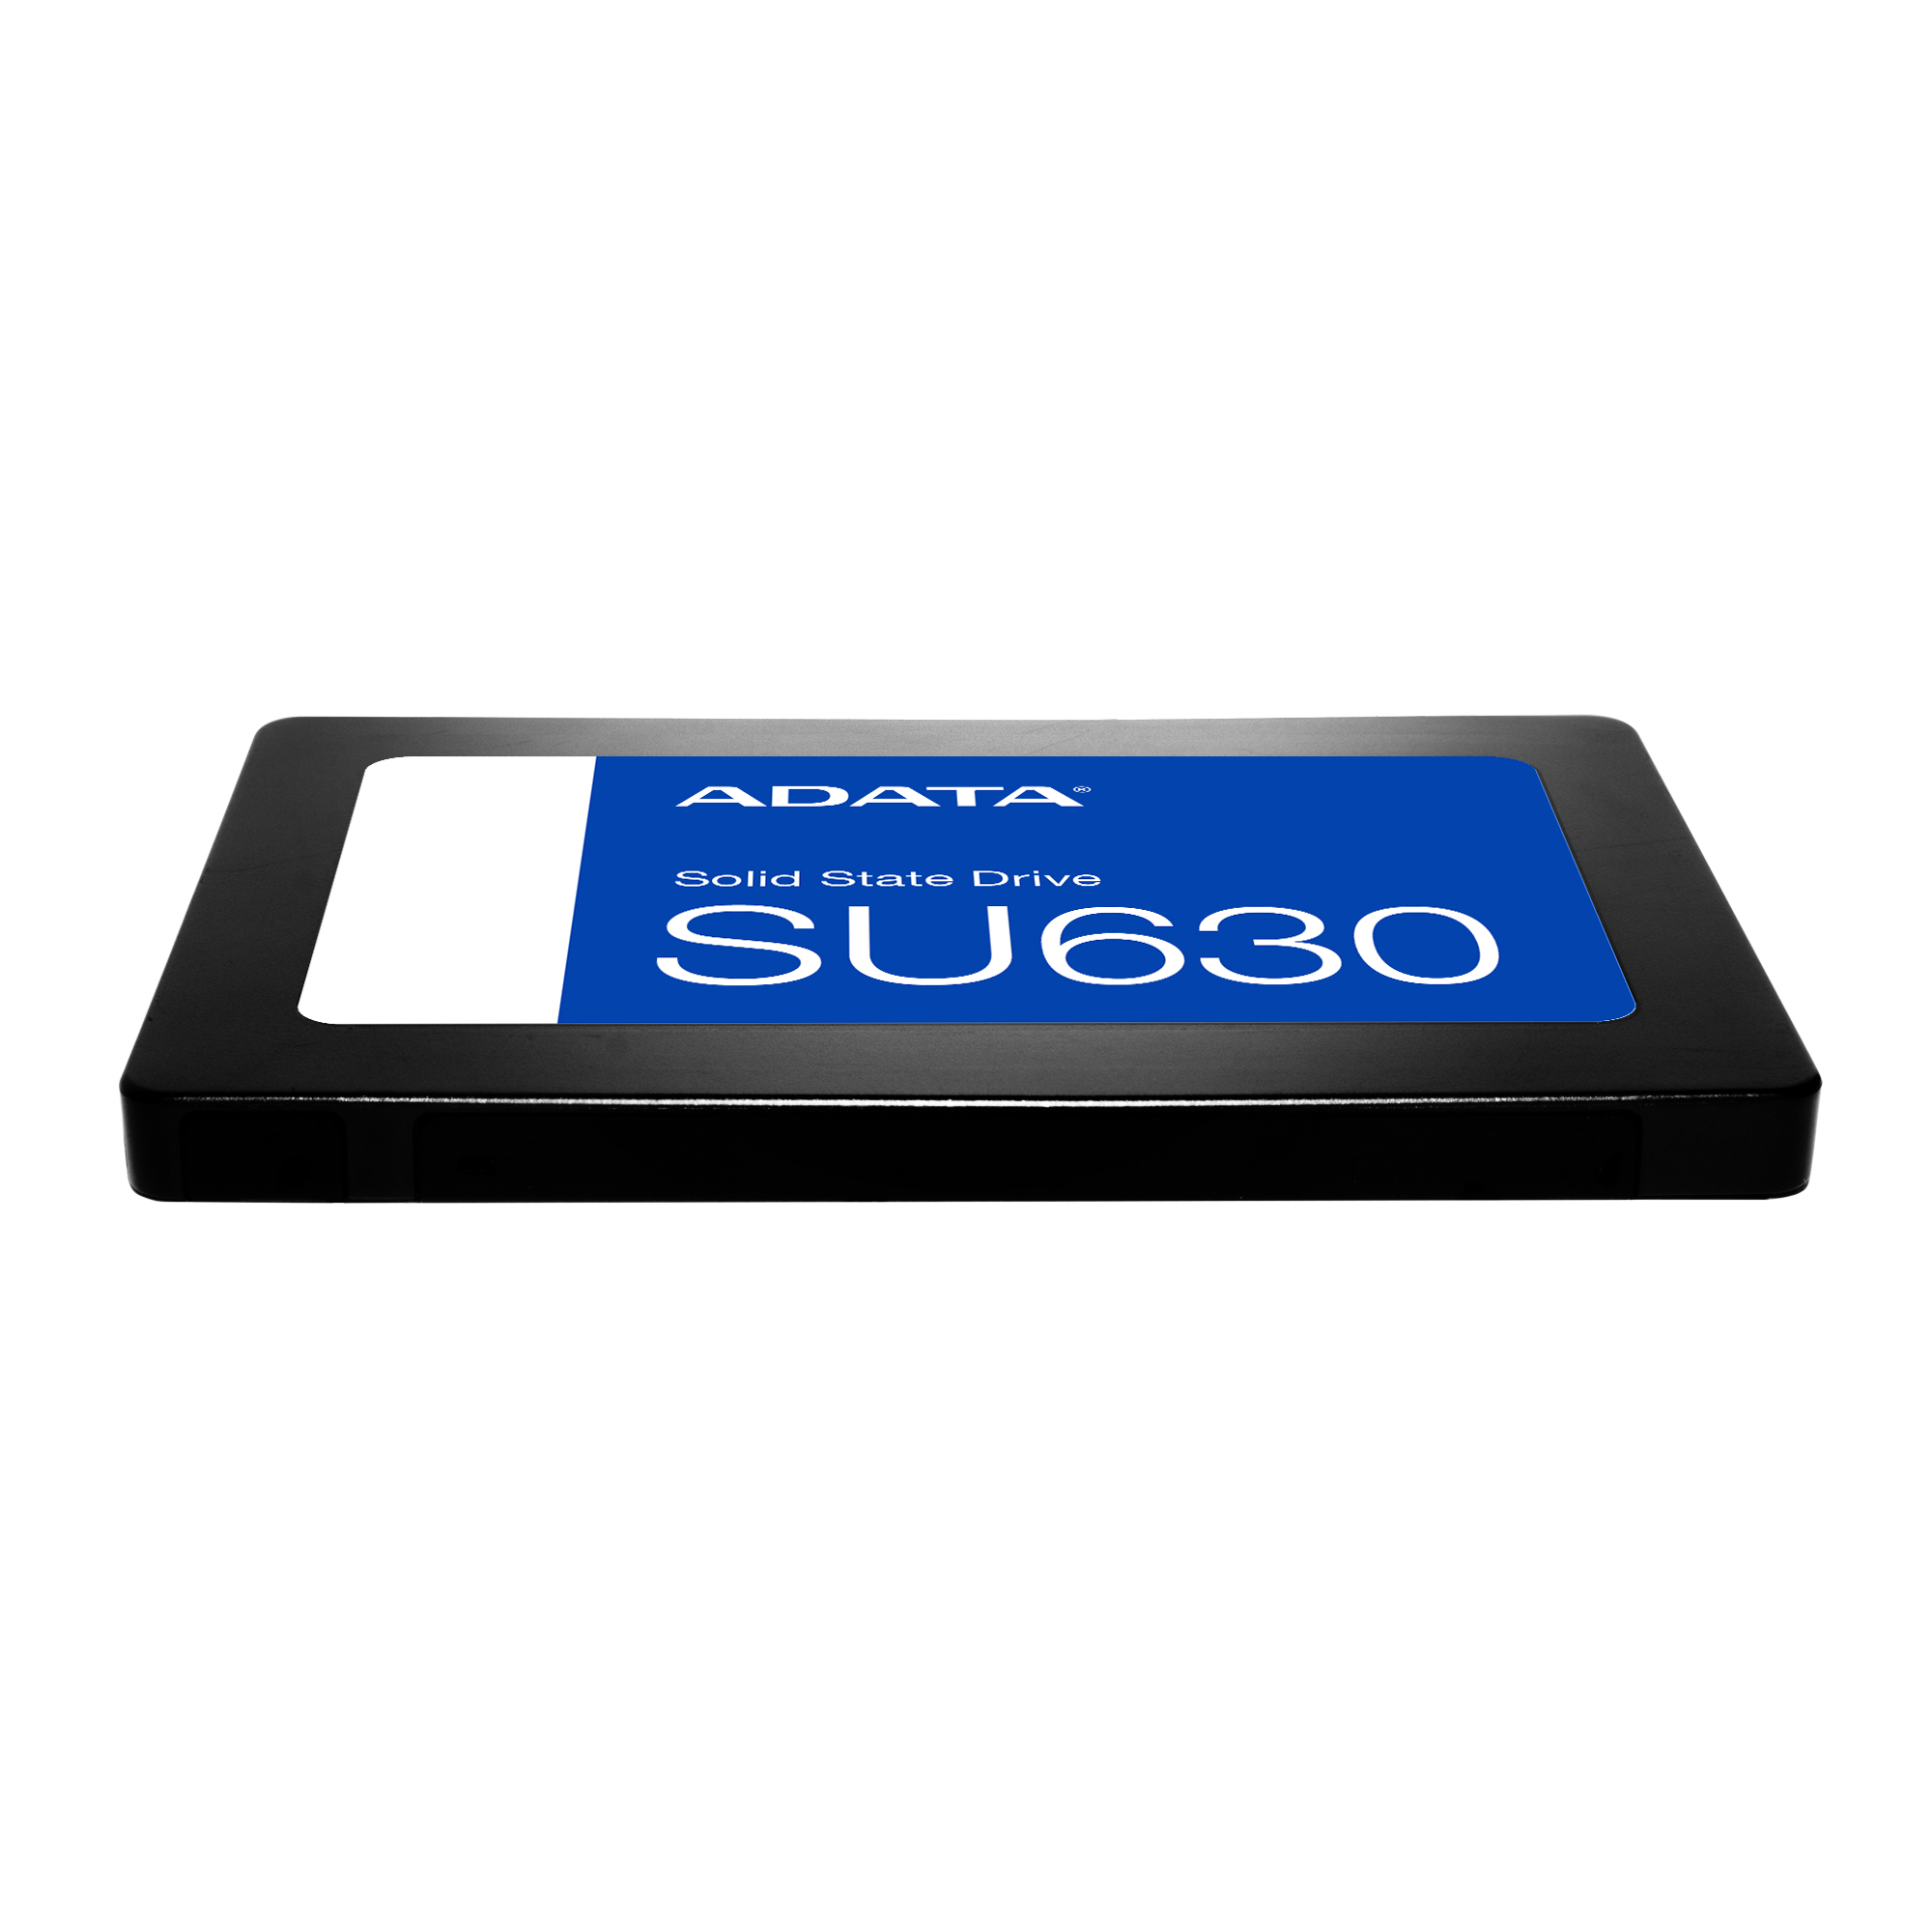 究極のSU630 SSD